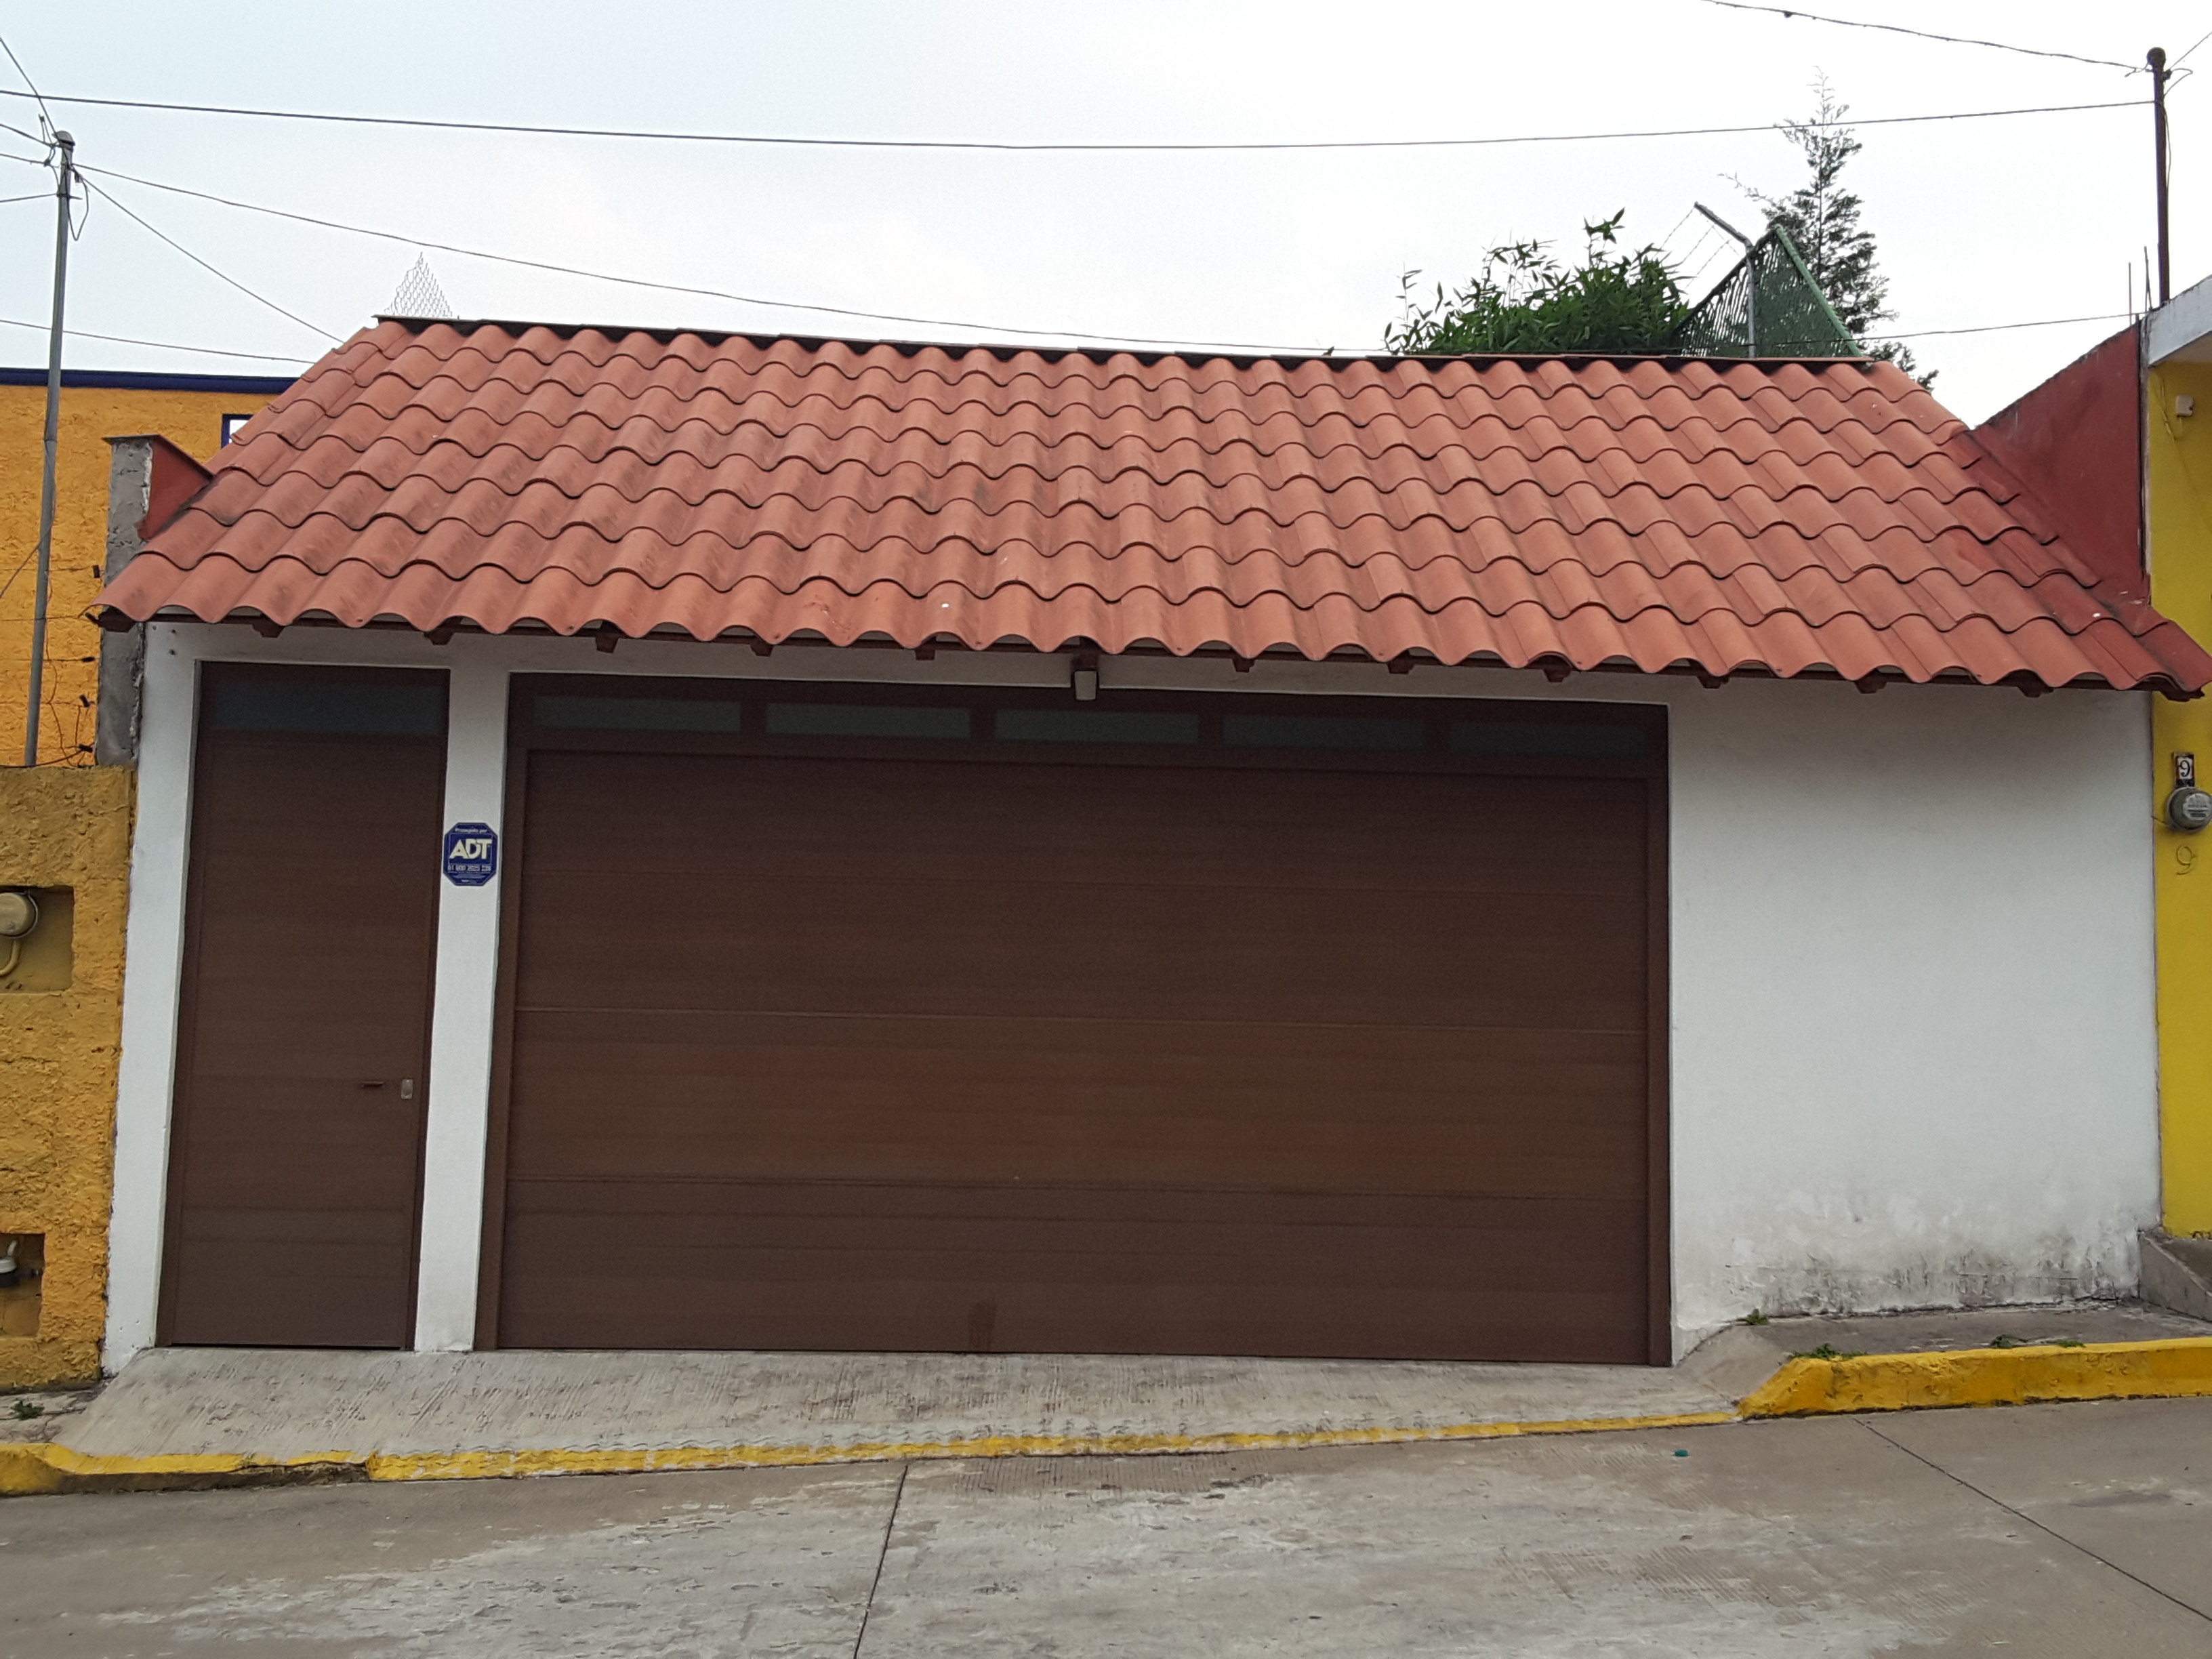  Casa en Venta Coatepec,3 recámaras con terreno de 160m2 o 310 m2 (hermoso jardin)